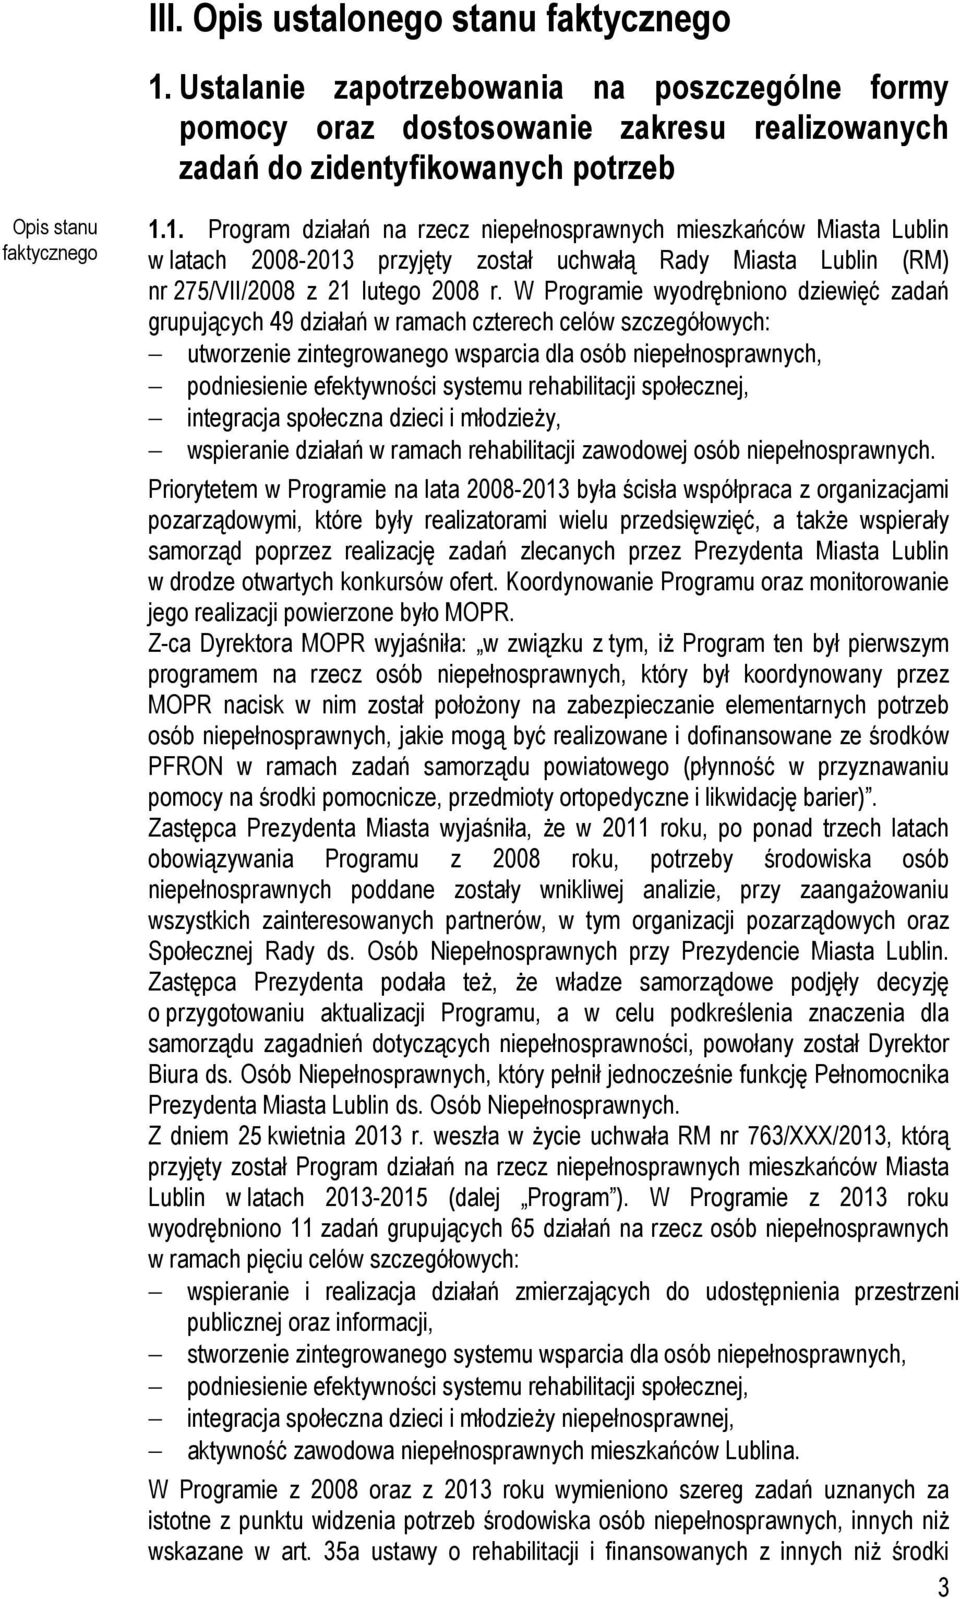 1. Program działań na rzecz niepełnosprawnych mieszkańców Miasta Lublin w latach 2008-2013 przyjęty został uchwałą Rady Miasta Lublin (RM) nr 275/VII/2008 z 21 lutego 2008 r.